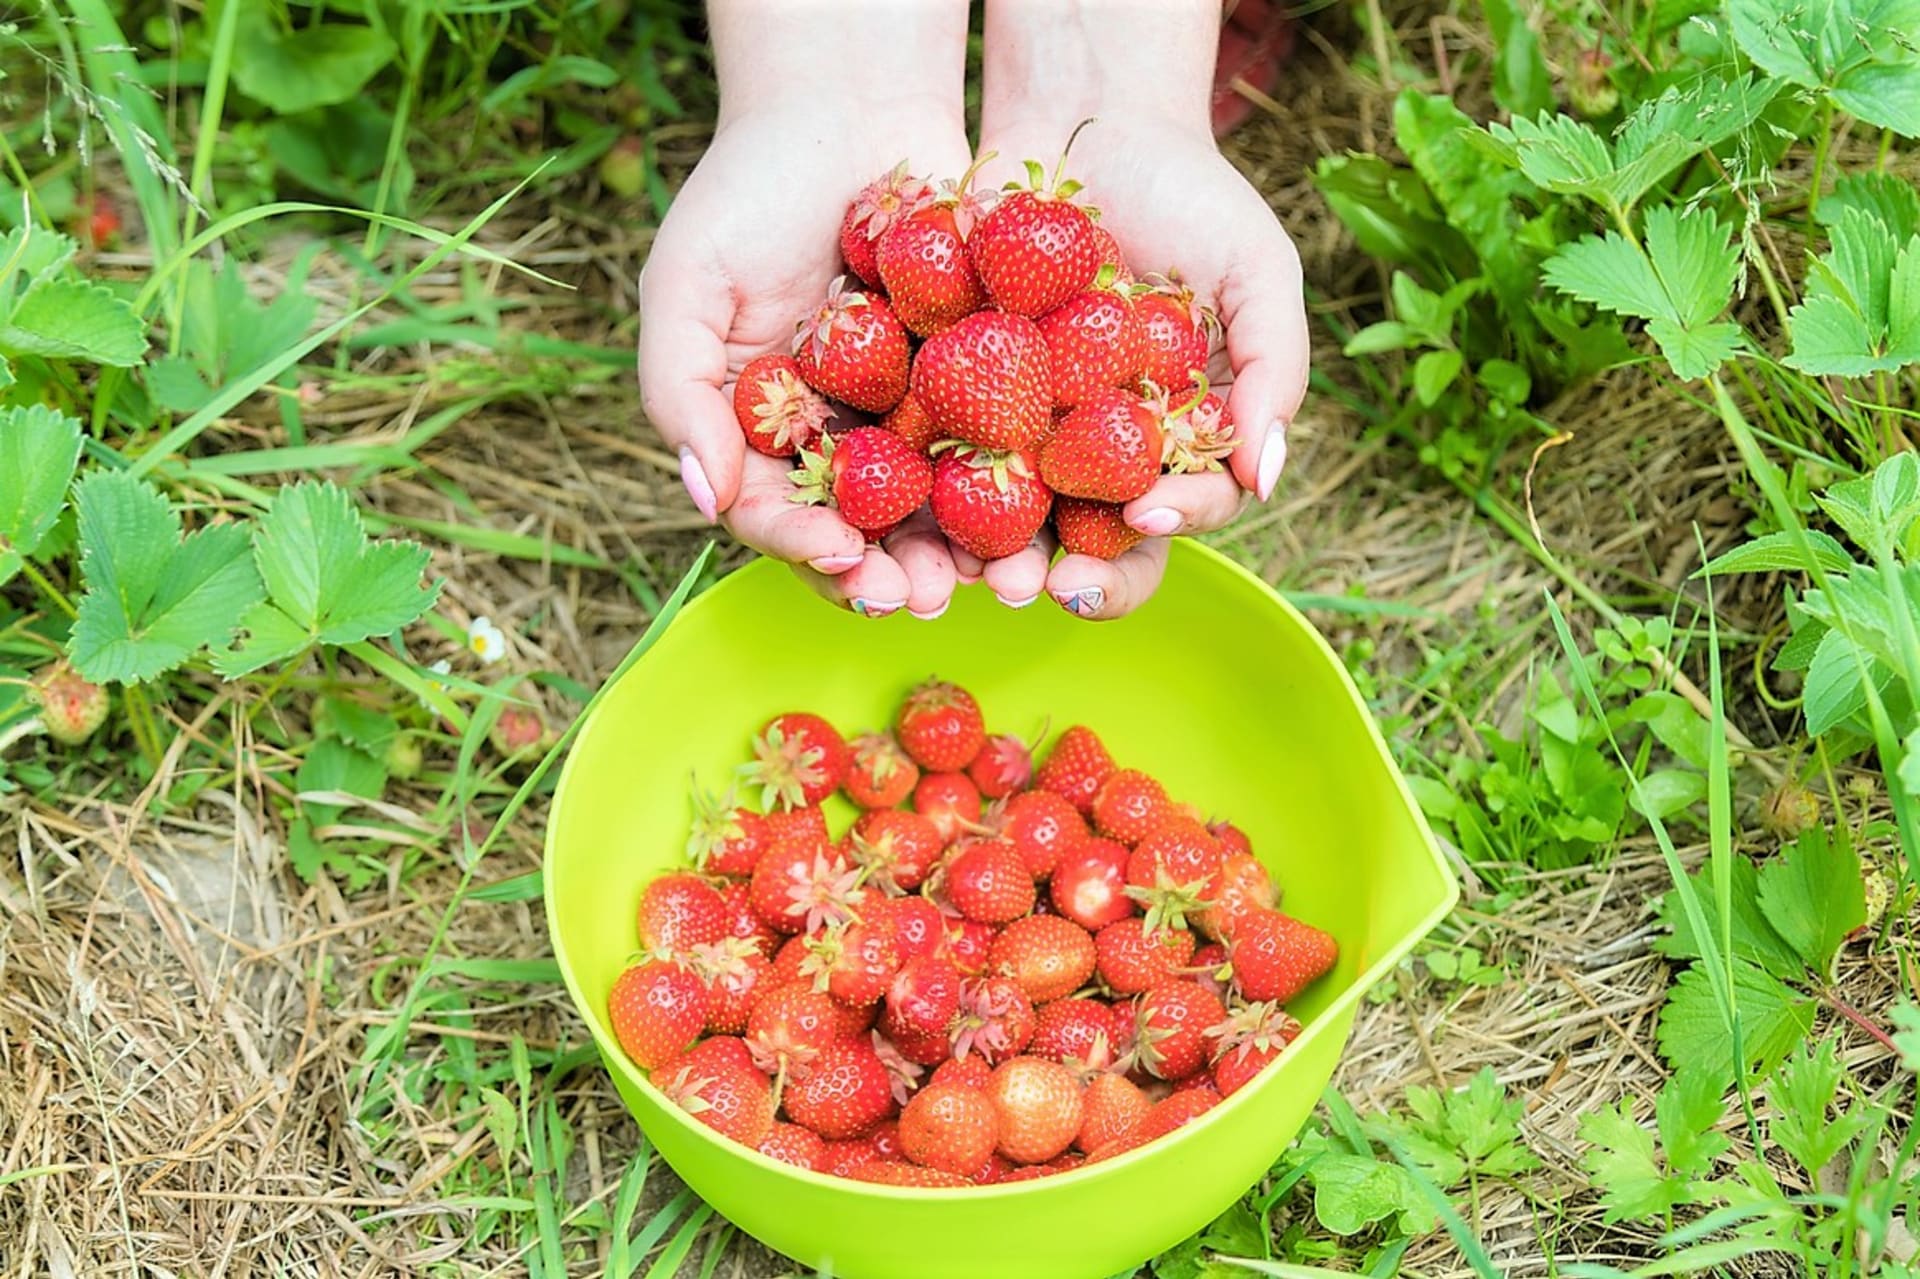 Sladké a voňavé jahody začínají venku na zahradě dozrávat obvykle v červnu. Jahody jsou skvělým zdrojem vitaminů a minerálních látek 